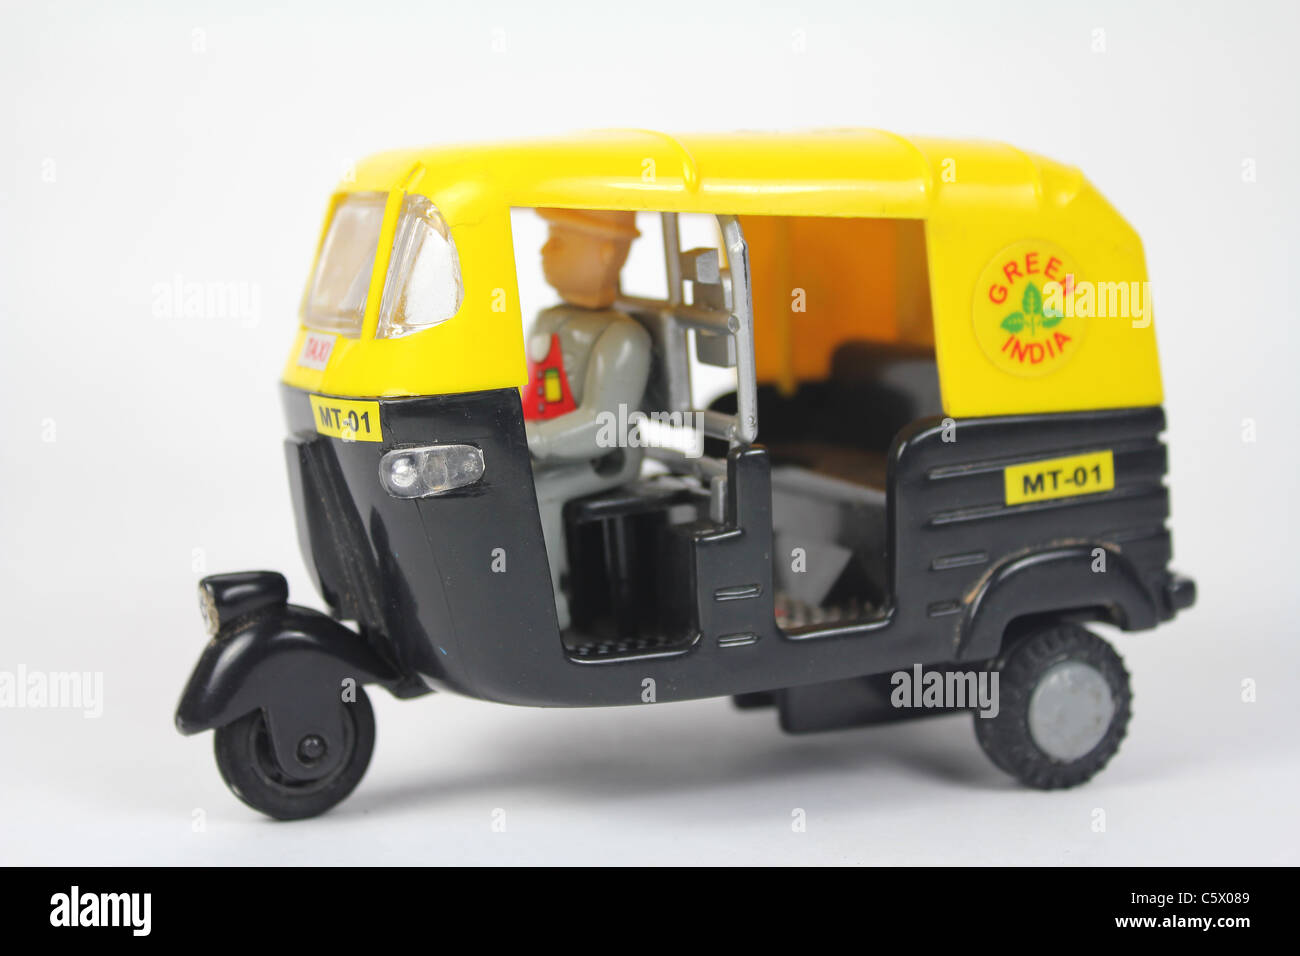 toy auto rickshaw also known as tuk tuk Stock Photo